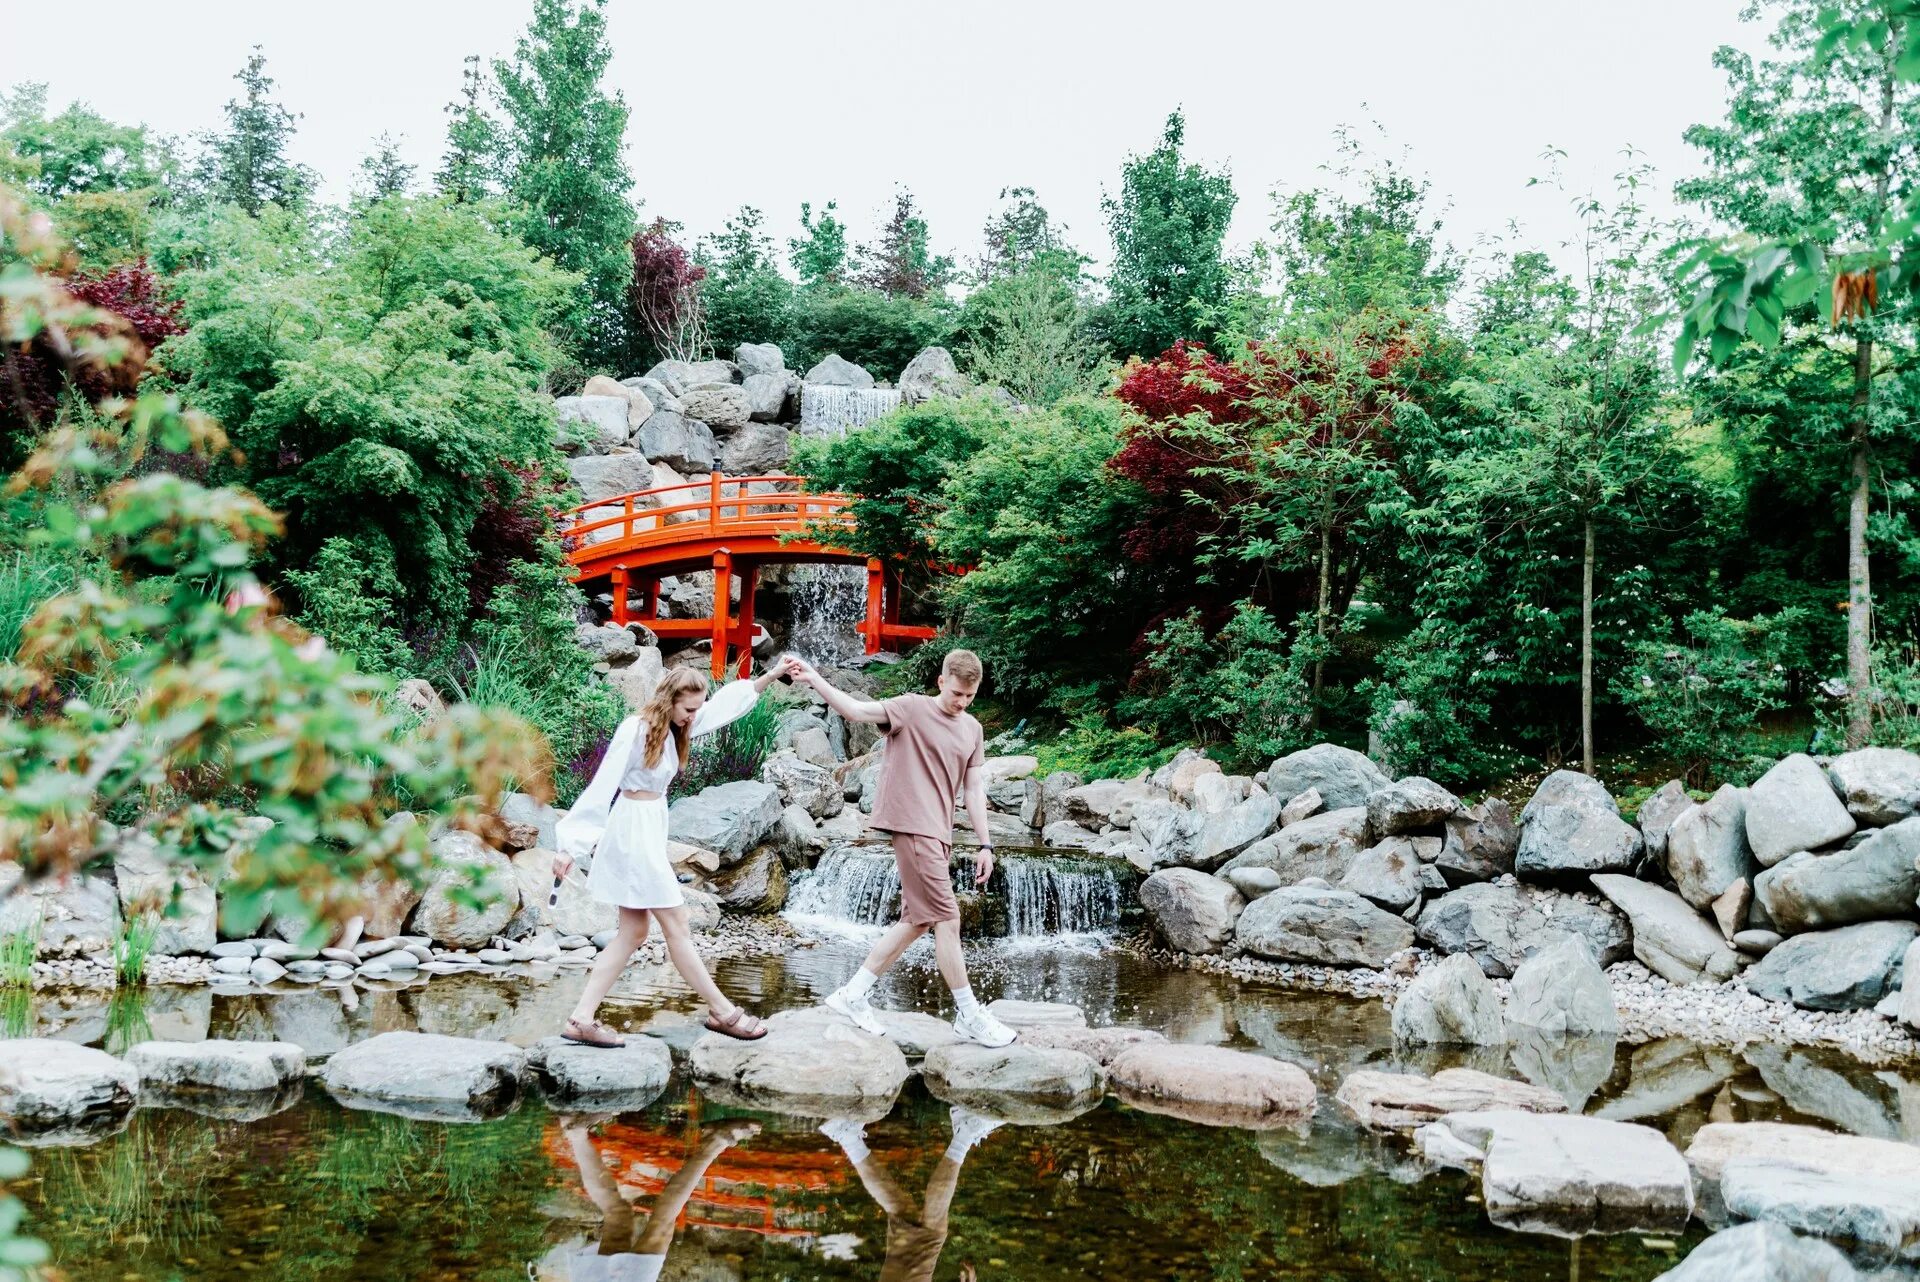 Японский сад краснодар где. Пагода в японском саду Краснодар. Японский сад Краснодар. Японский сад в Краснодаре дракон в воде. Фотосессия в японском саду Краснодар.